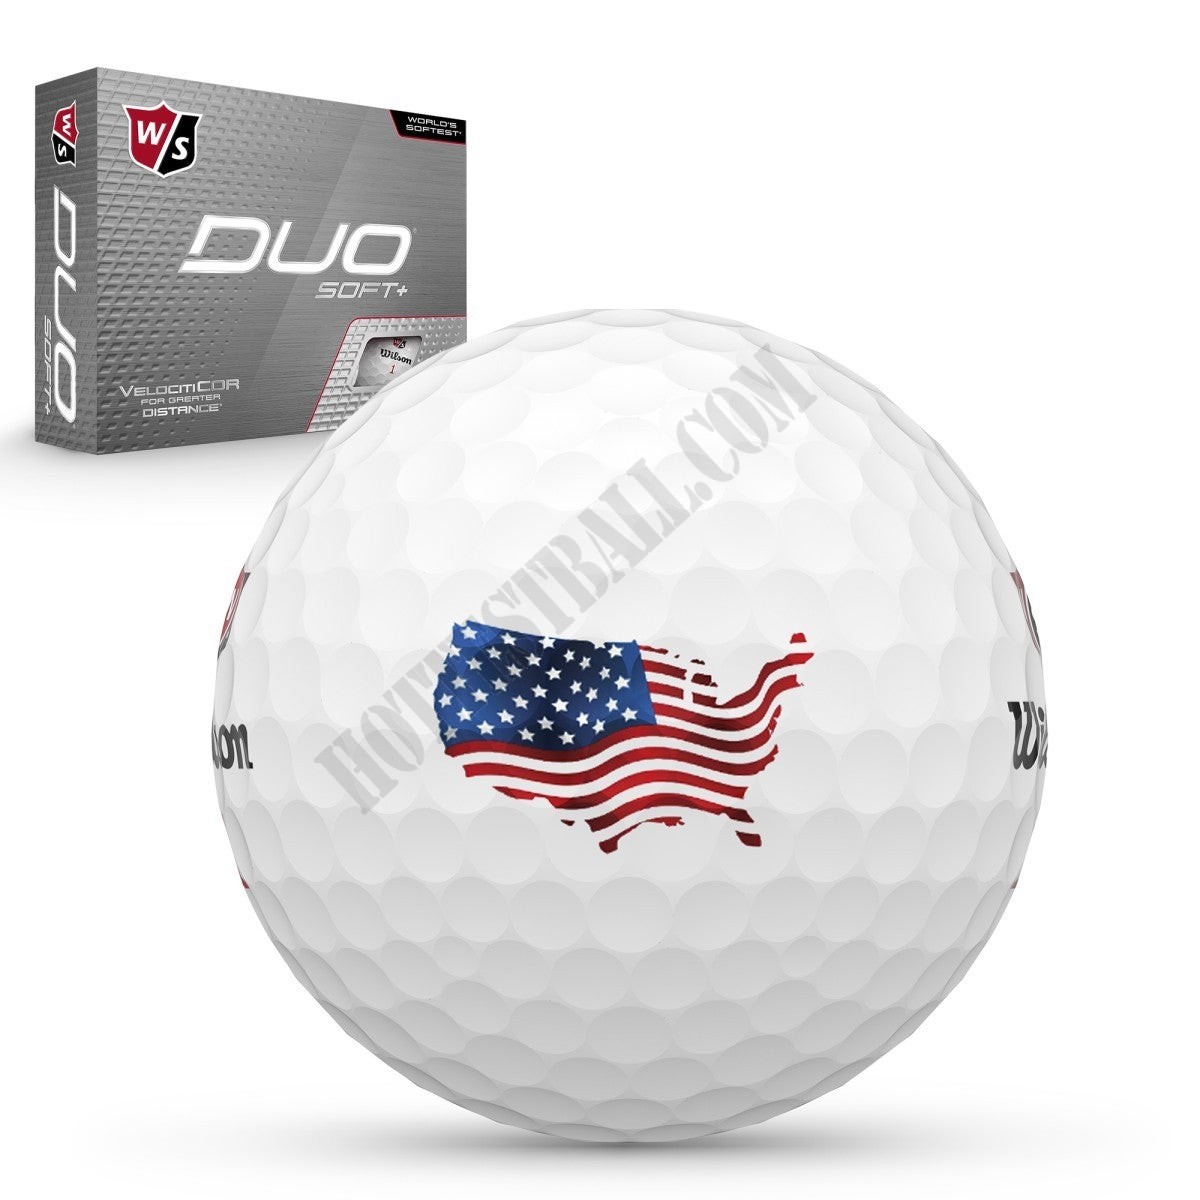 DUO Soft+ USA Golf Balls - Wilson Discount Store - -0